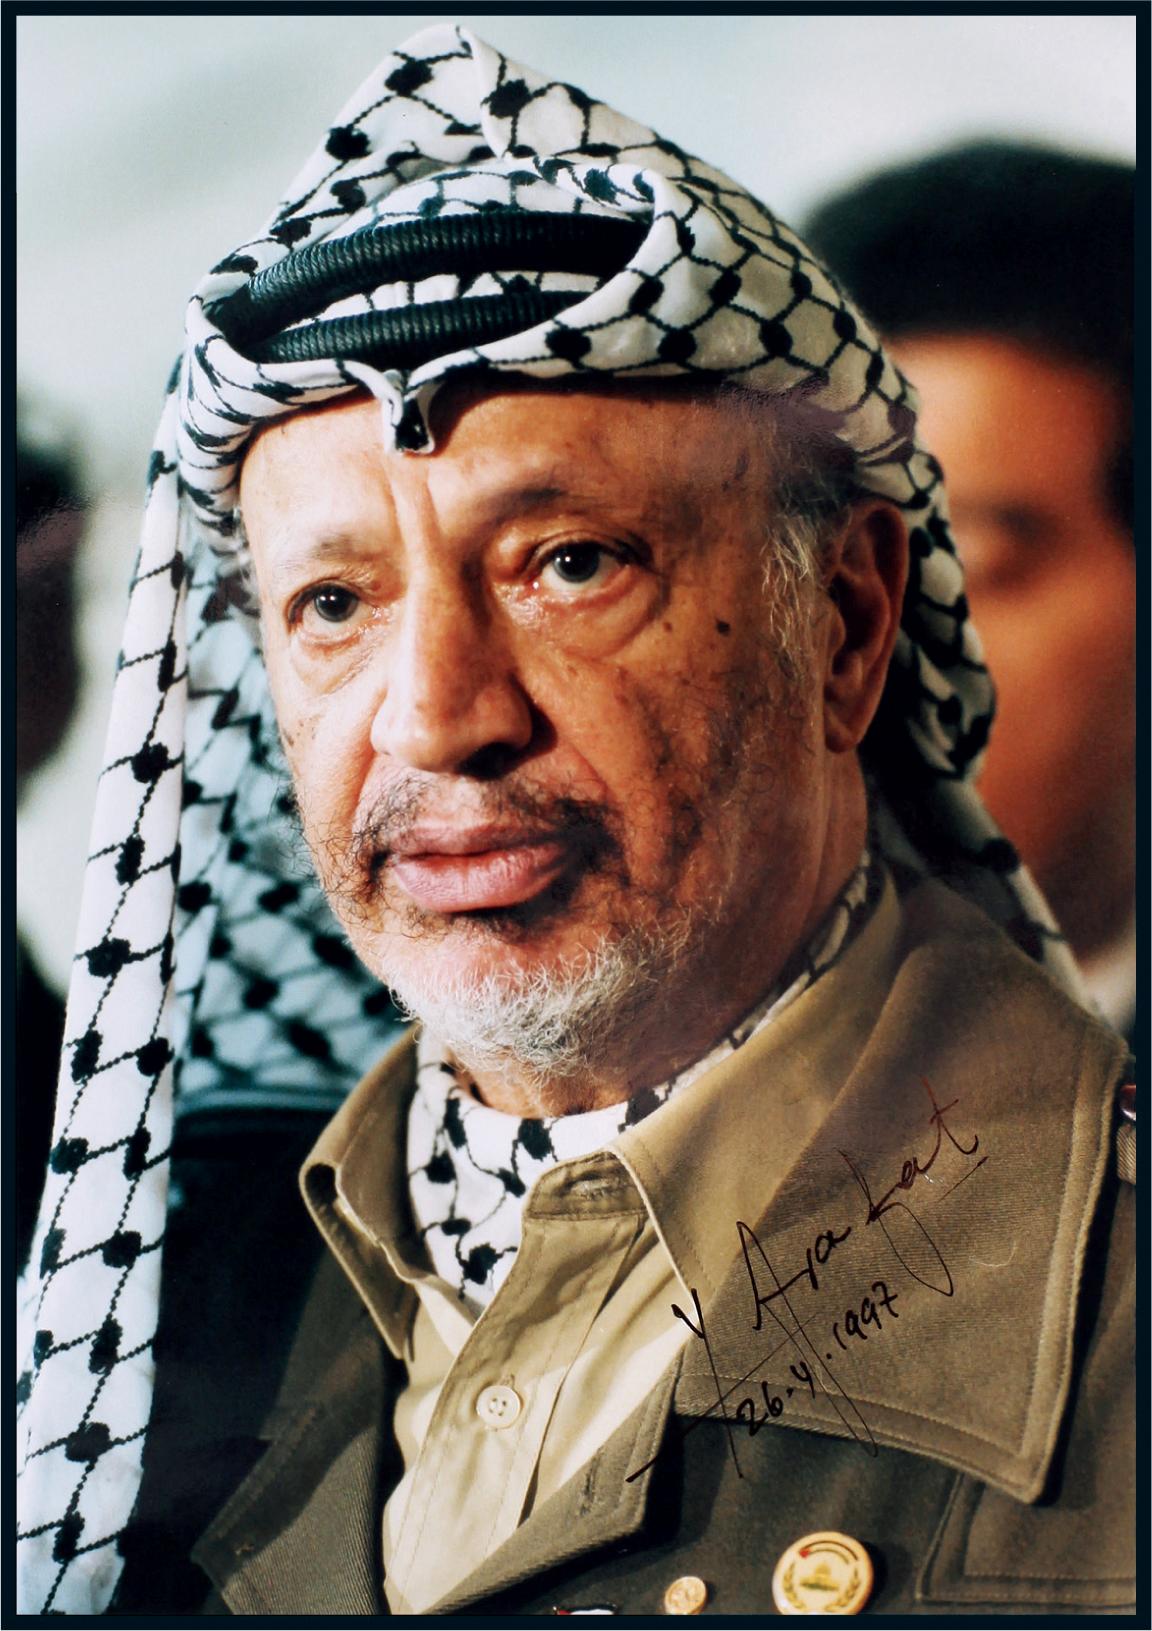 11017 巴勒斯坦前总统阿拉法特(yasser arafat)签名照并签署日期,附